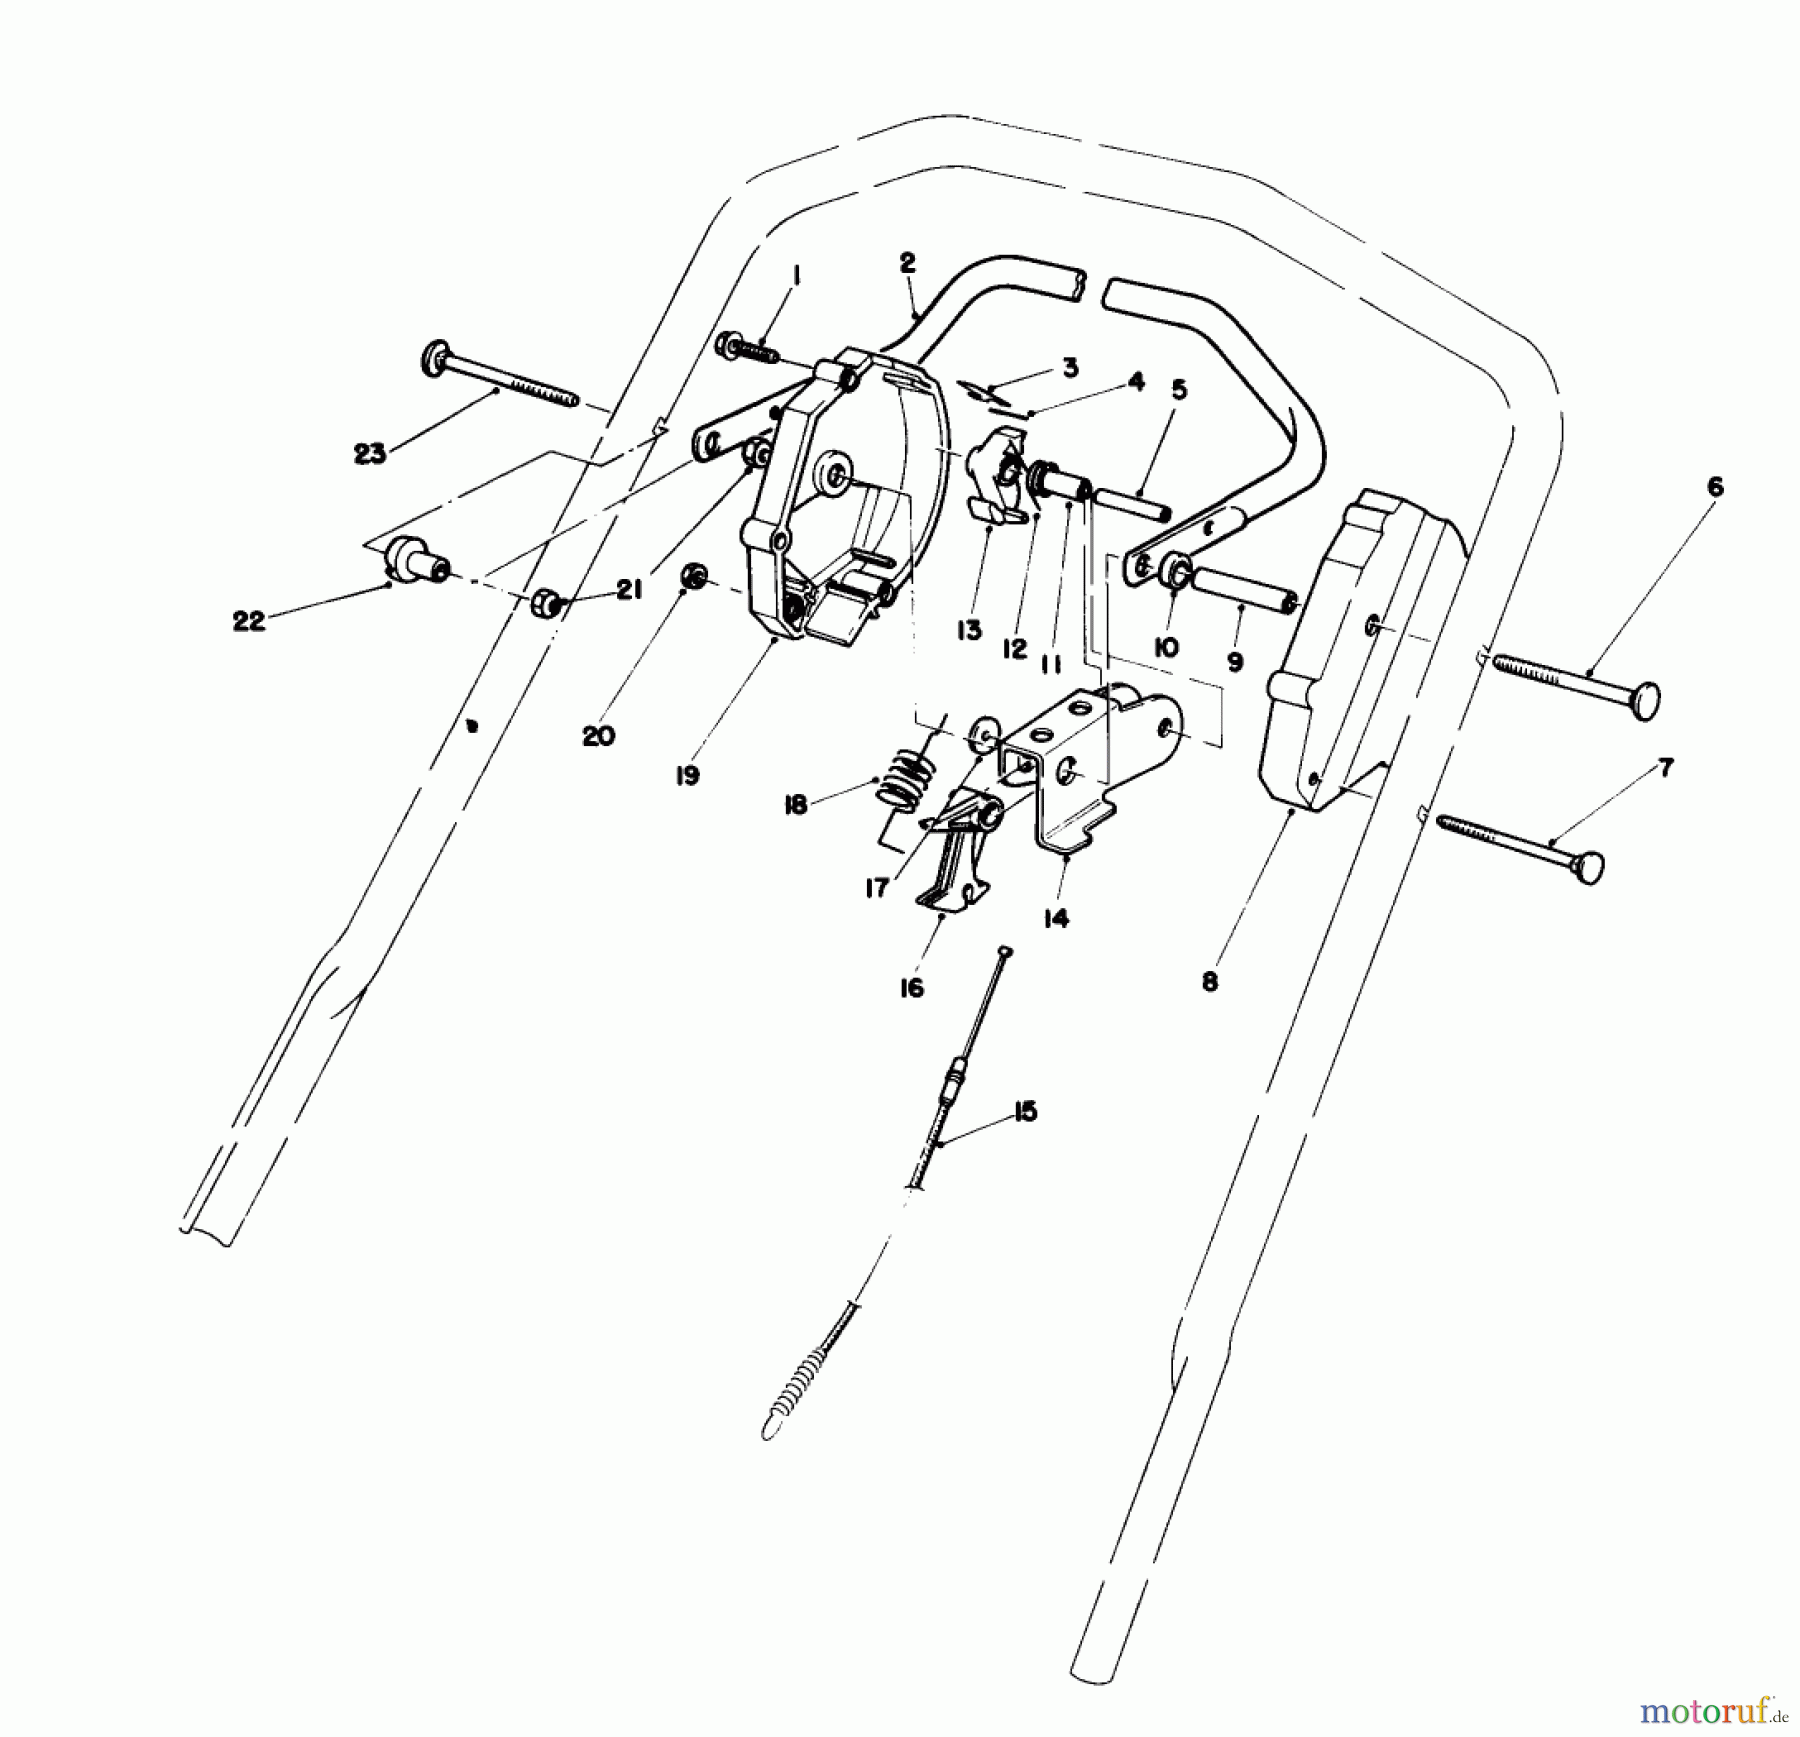  Toro Neu Mowers, Walk-Behind Seite 1 20584 - Toro Lawnmower, 1988 (8000001-8999999) CONTROL ASSEMBLY